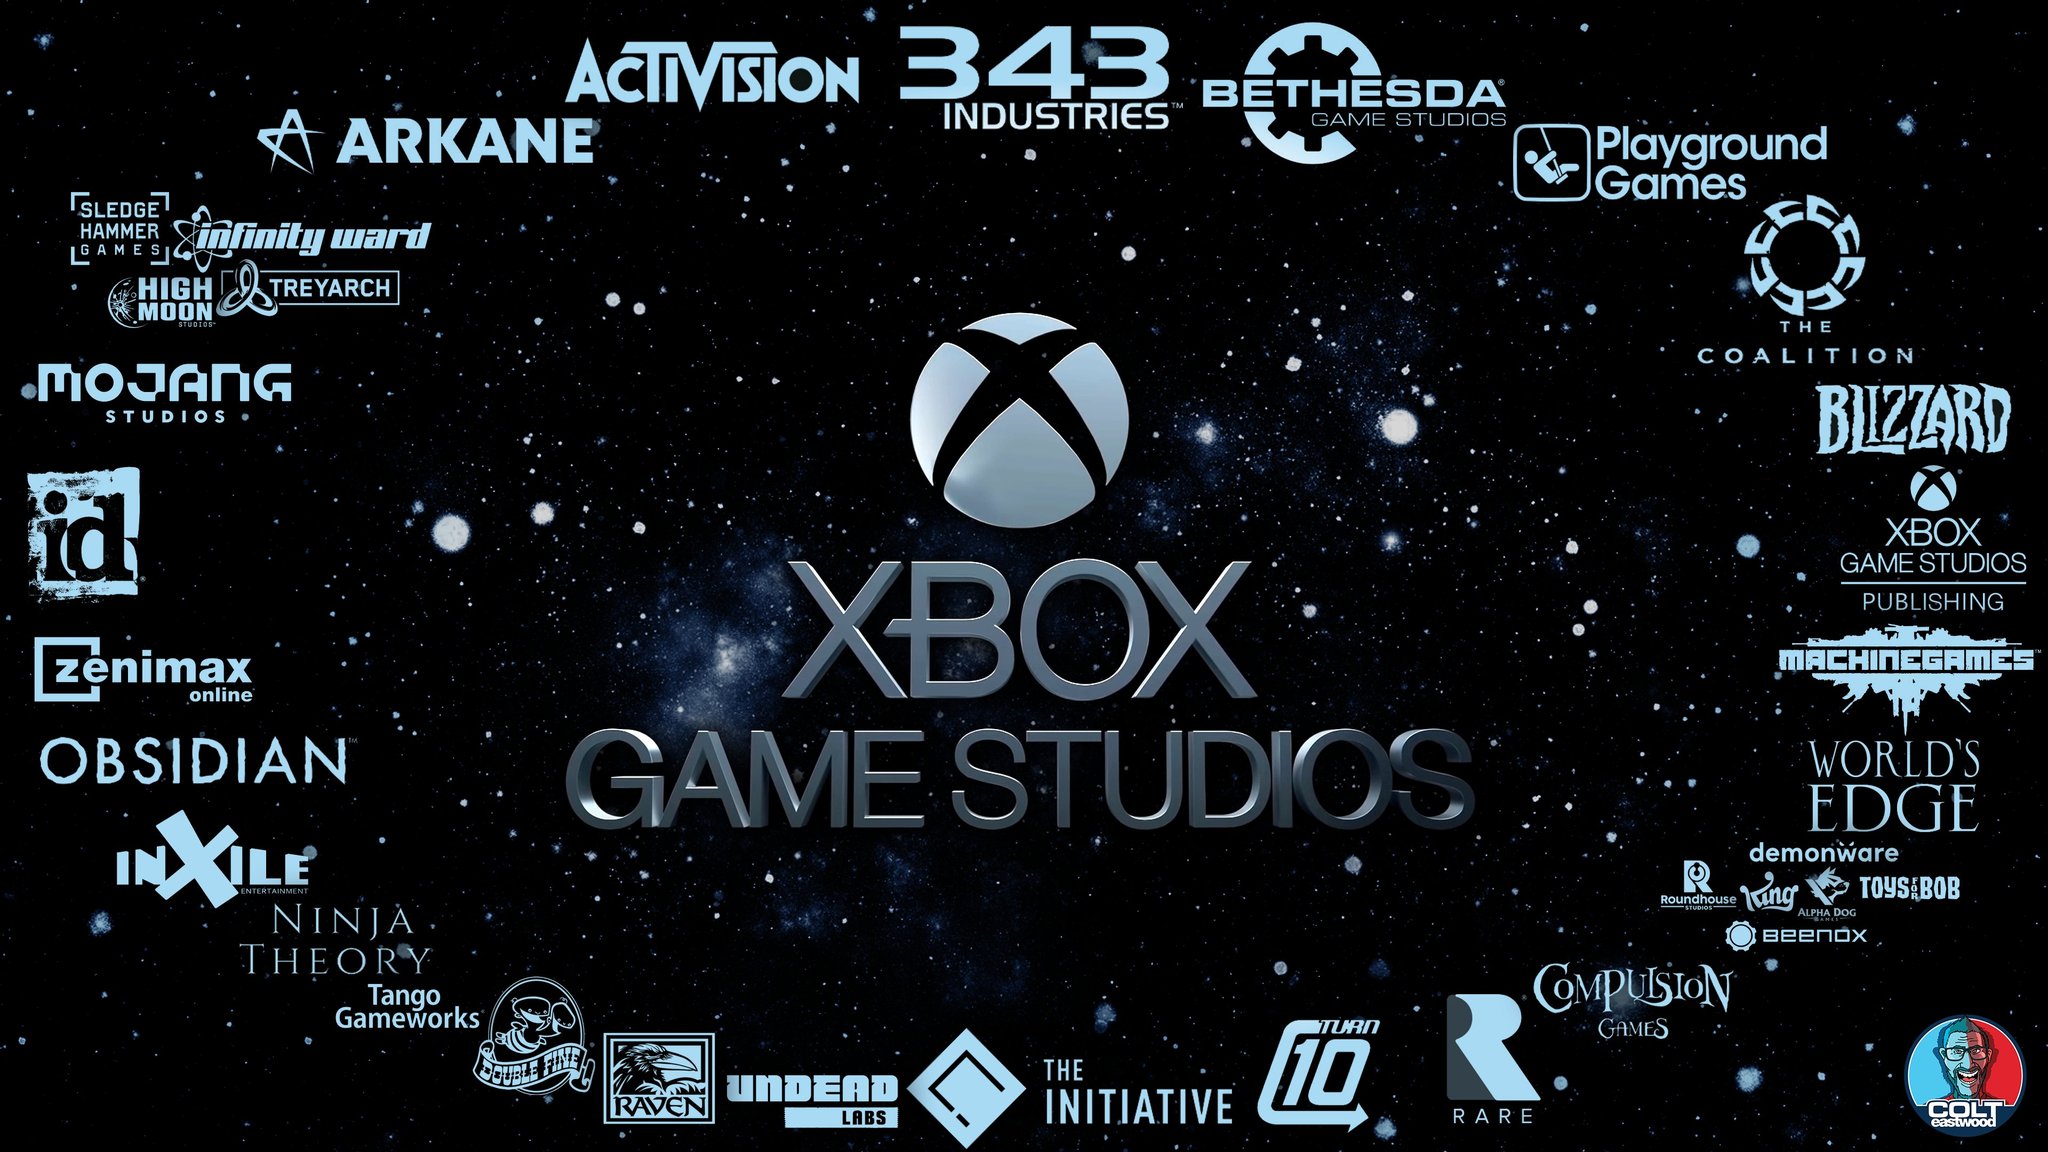 Xbox Game Studios - VGMdb